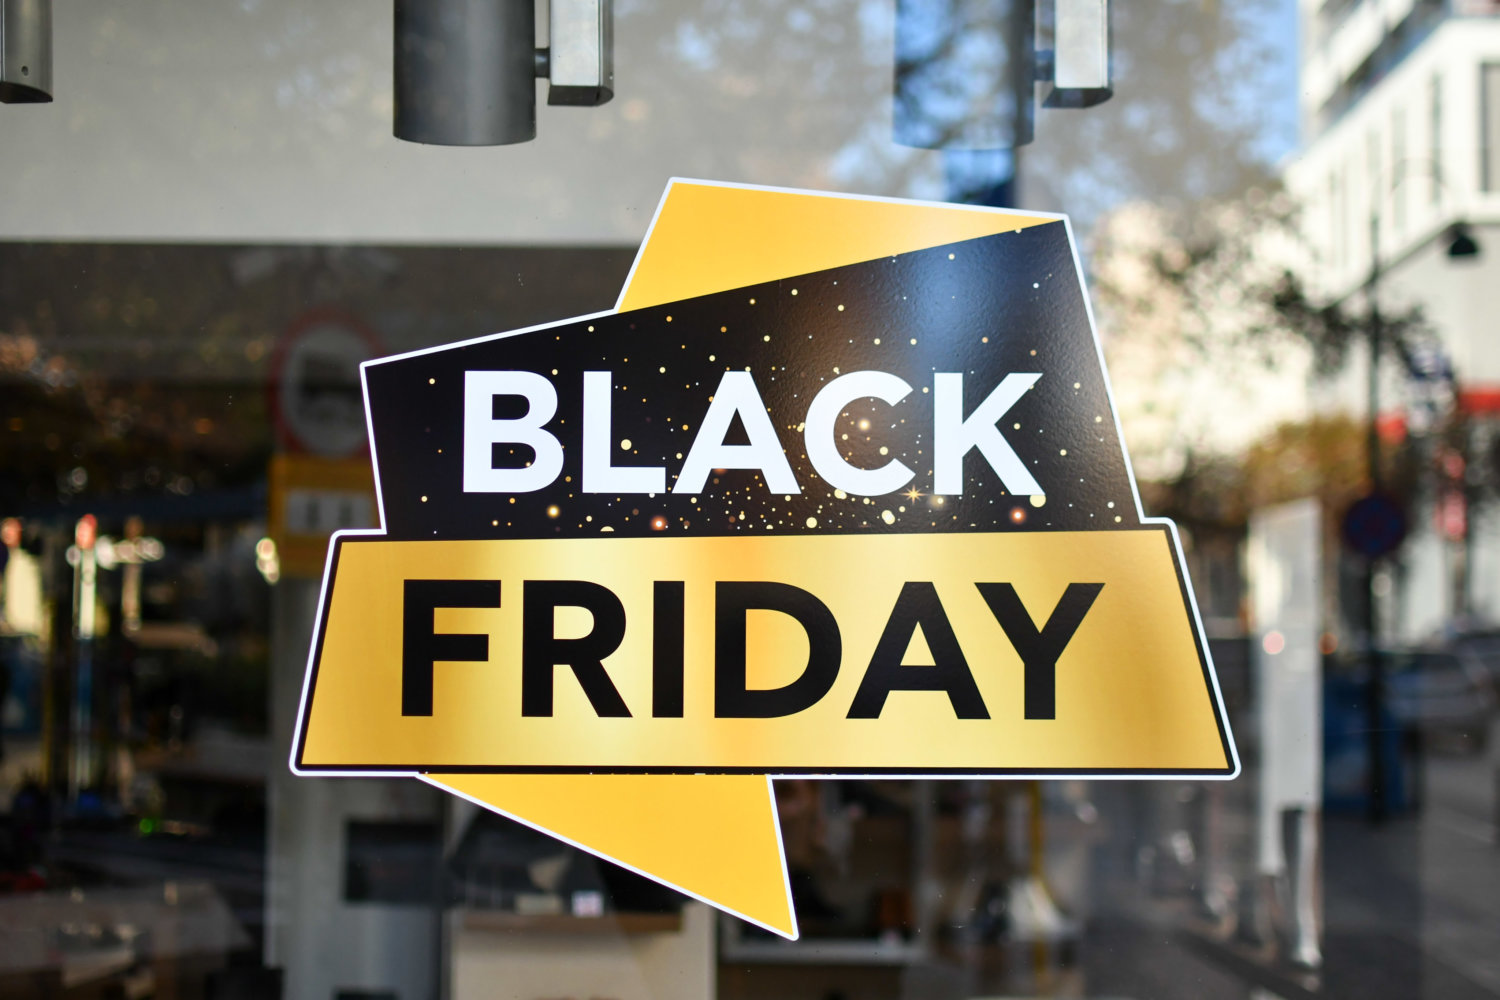 ΕΣΕΕ: Ικανοποίηση για τη Black Friday, σκεπτικισμός για την επόμενη ημέρα